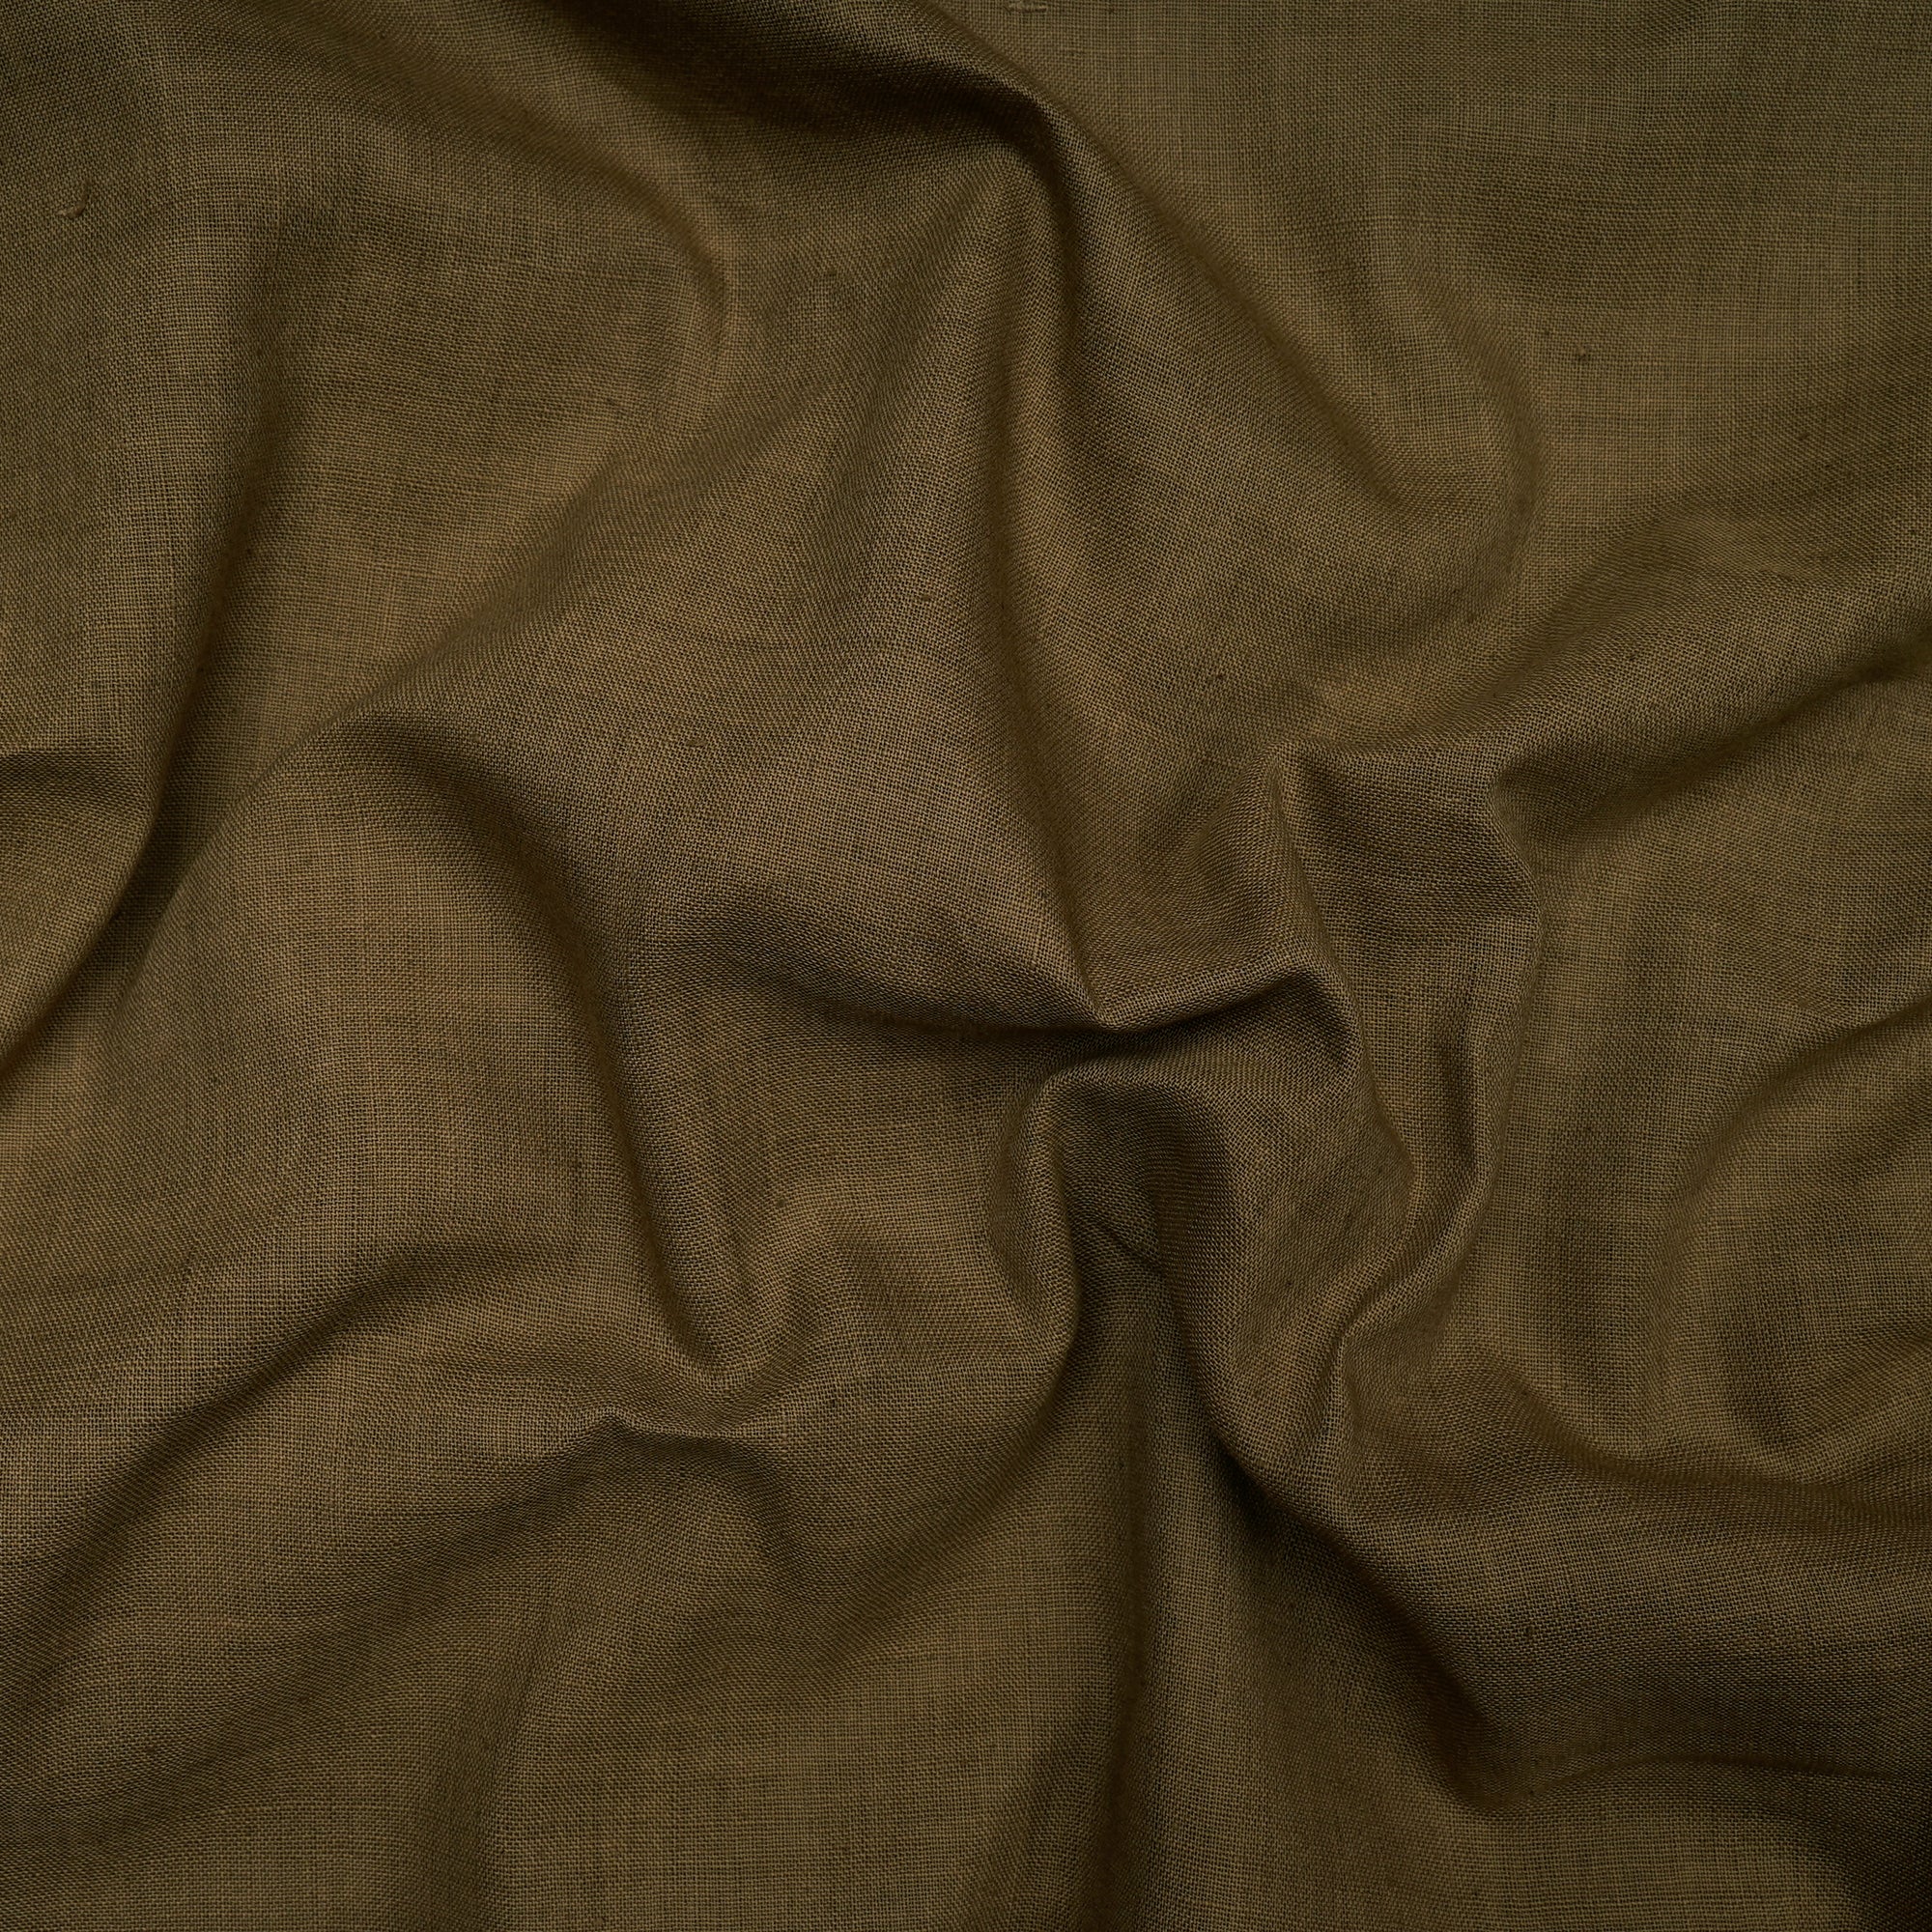 Elmwood Handspun Handwoven Muslin Cotton Fabric